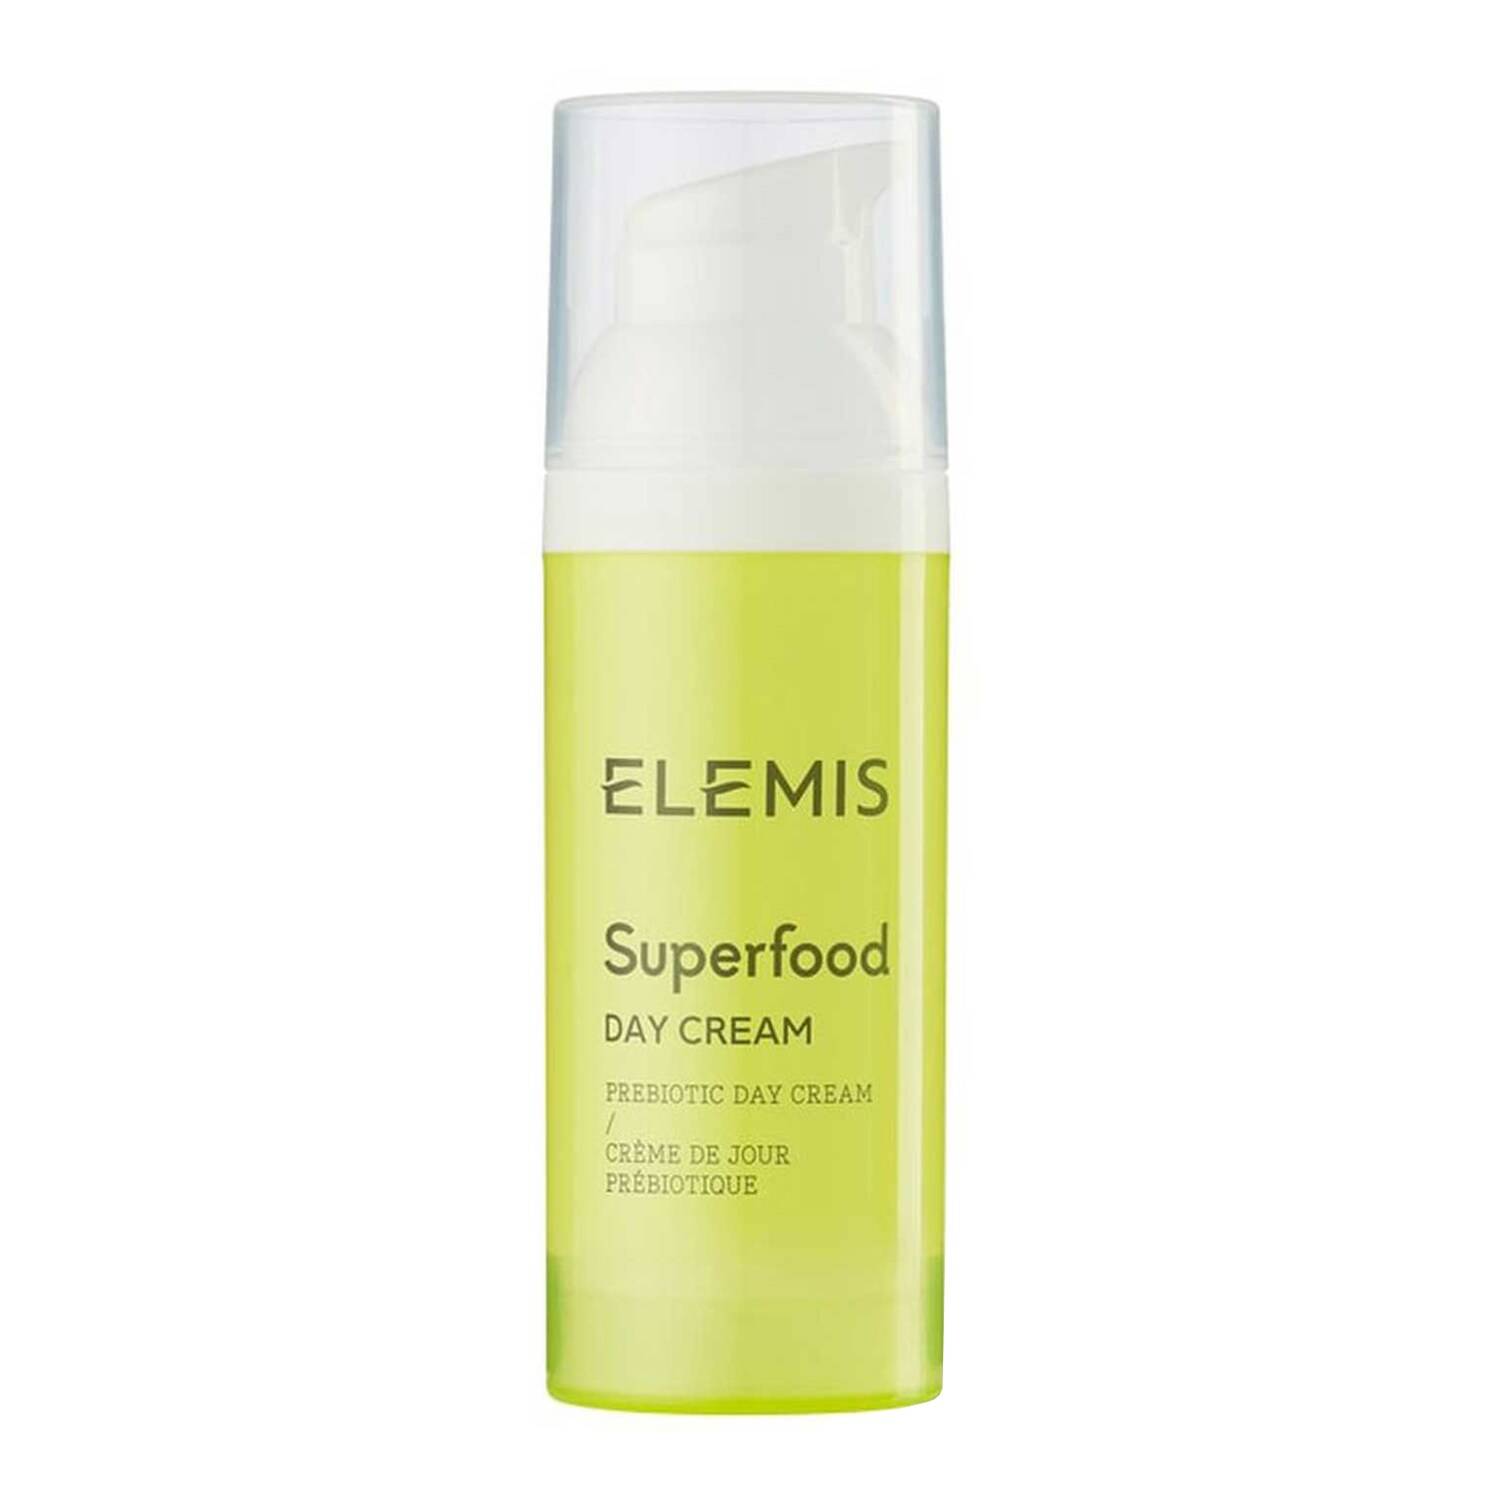 ELEMIS Superfood Prebiotic Day Cream 50ml